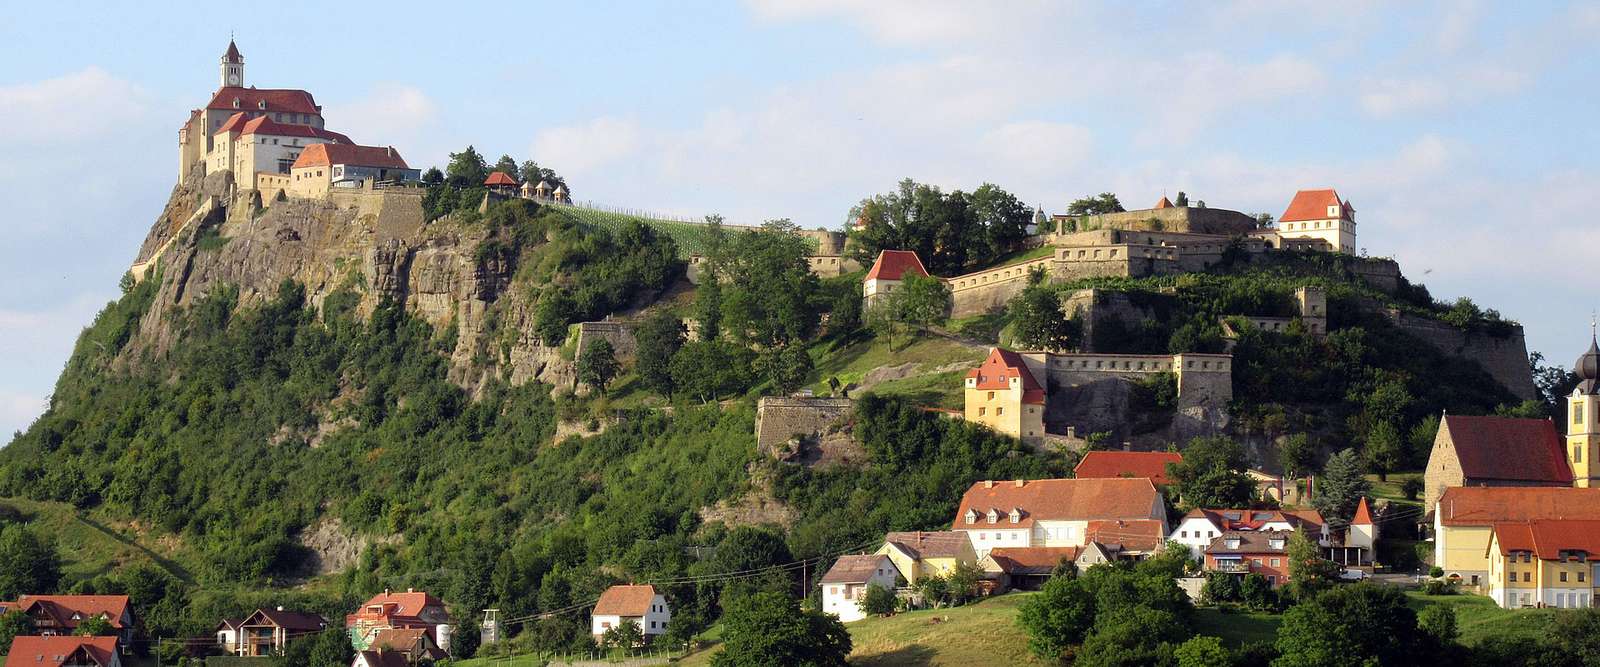 Güssing Burgenland Oostenrijk online puzzel